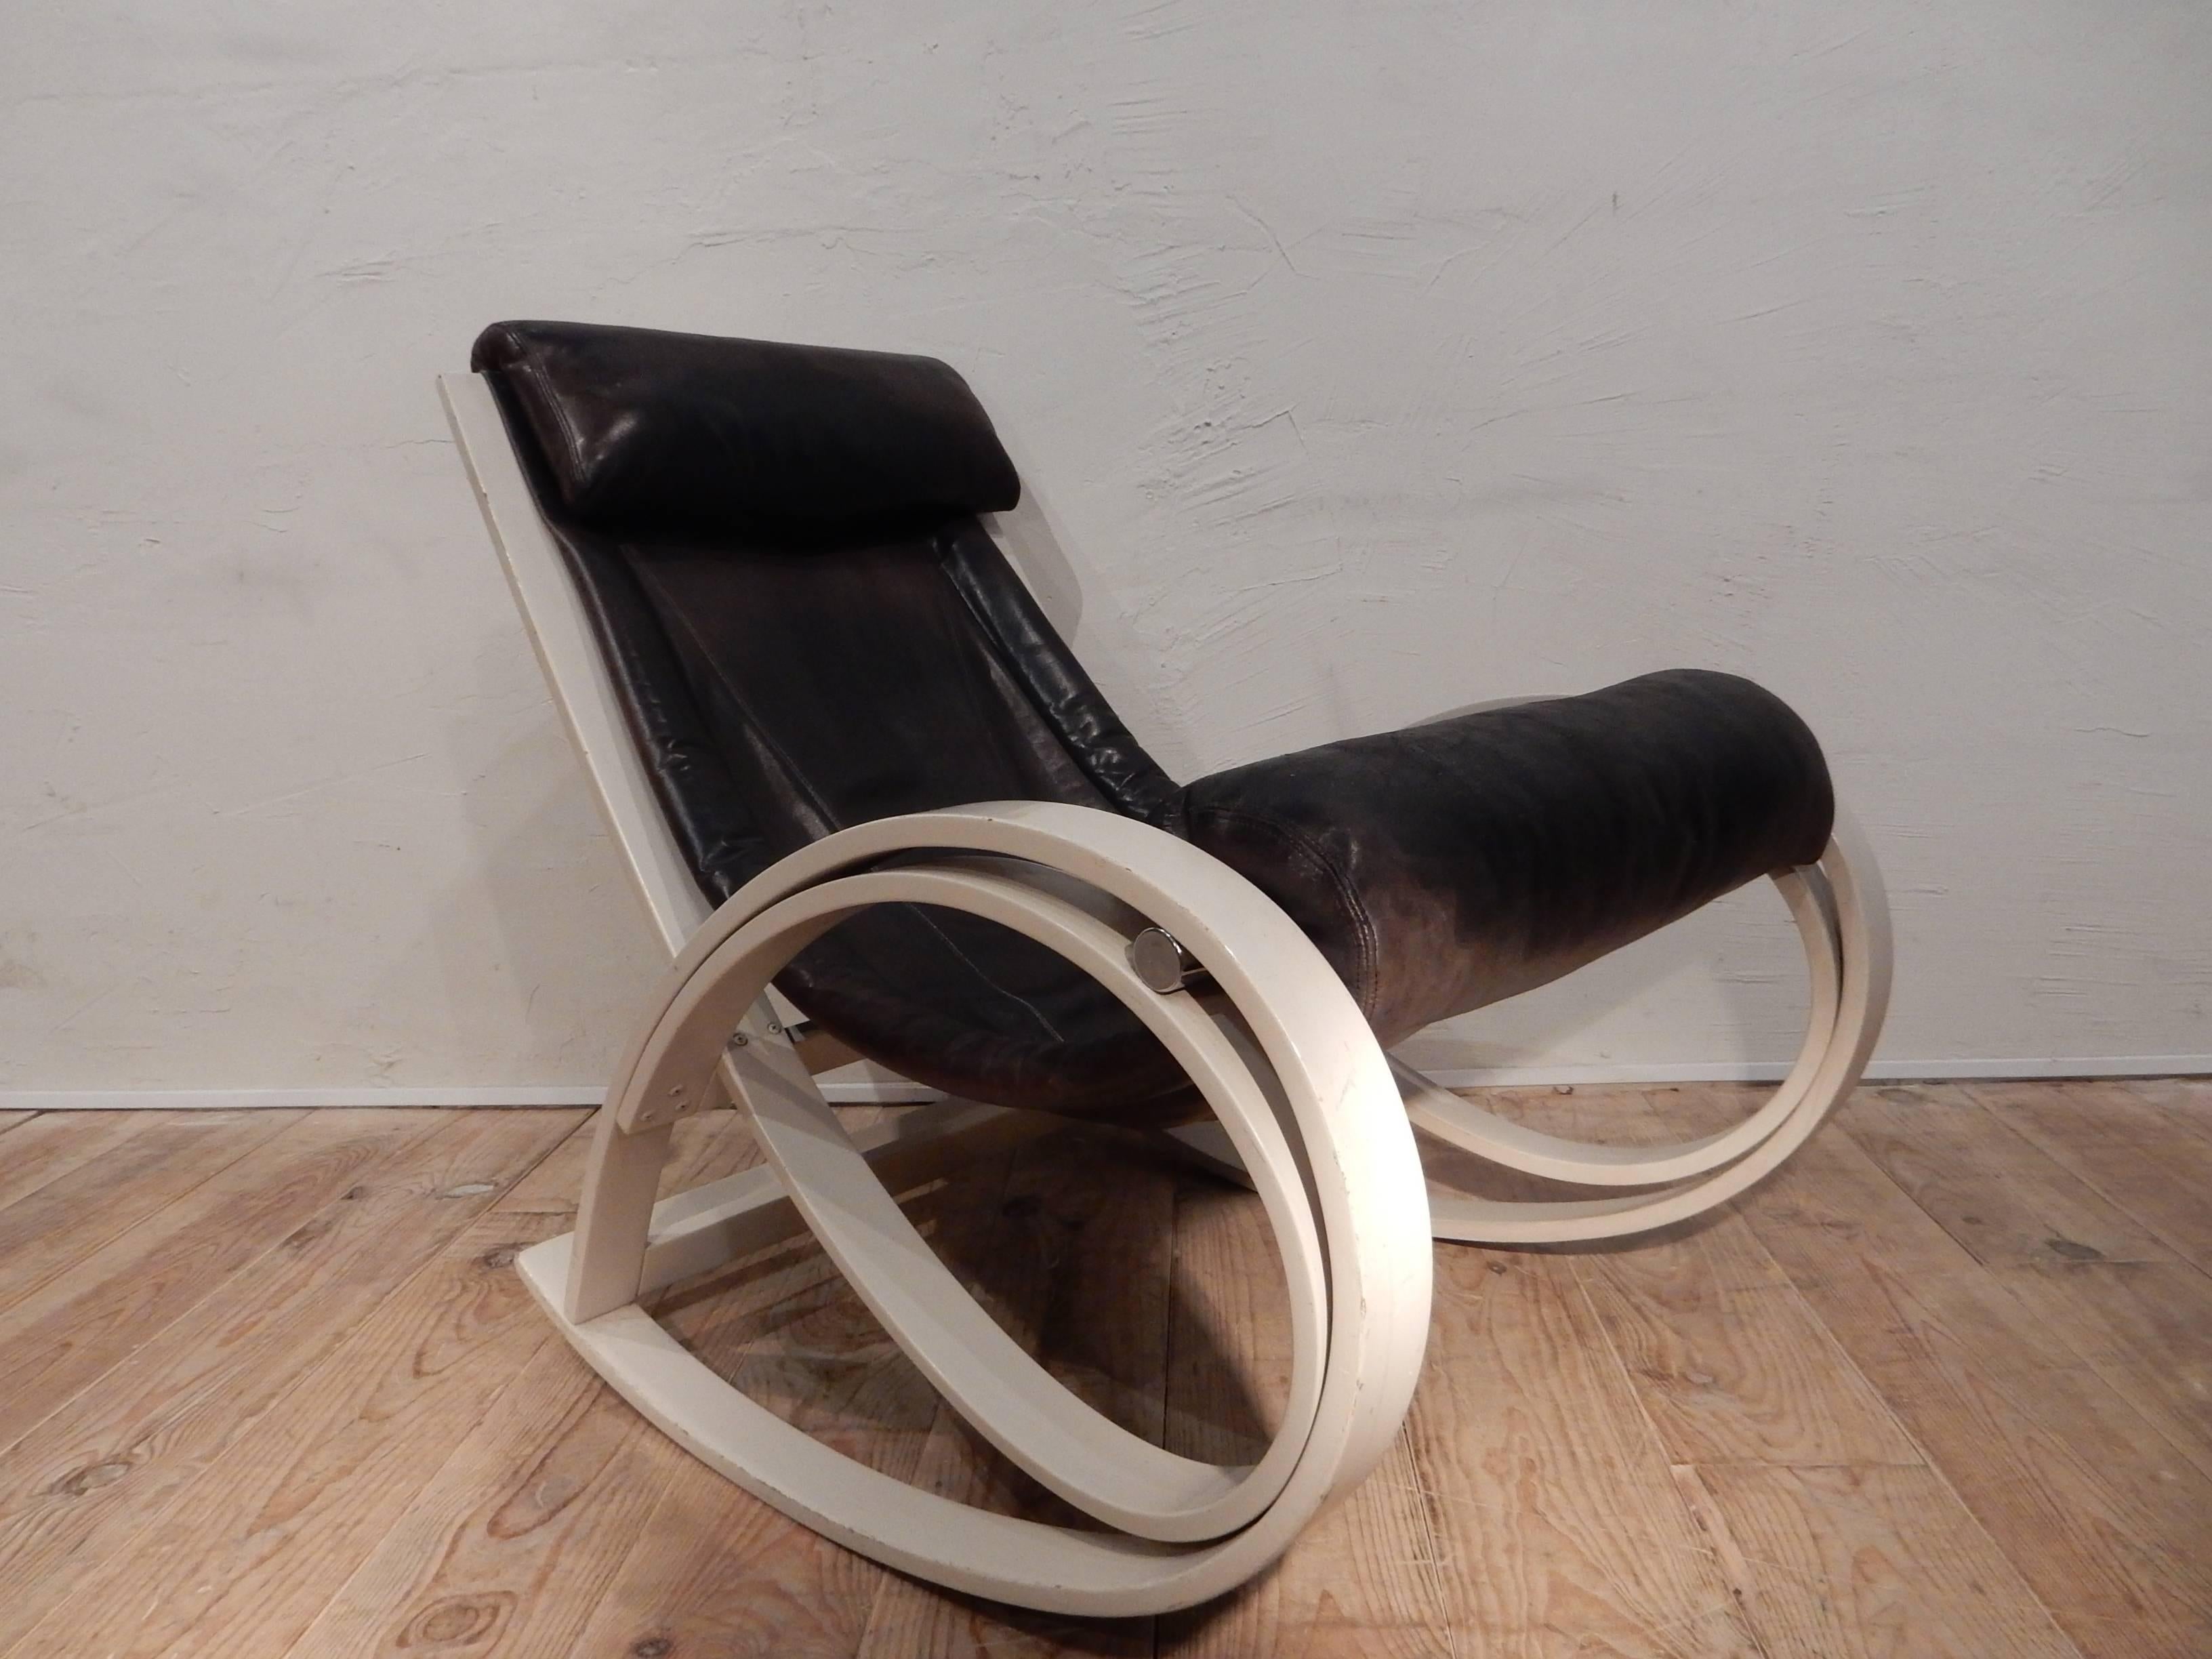 Leather Sgarsul Rocking Chair by Gae Aulenti, 1962